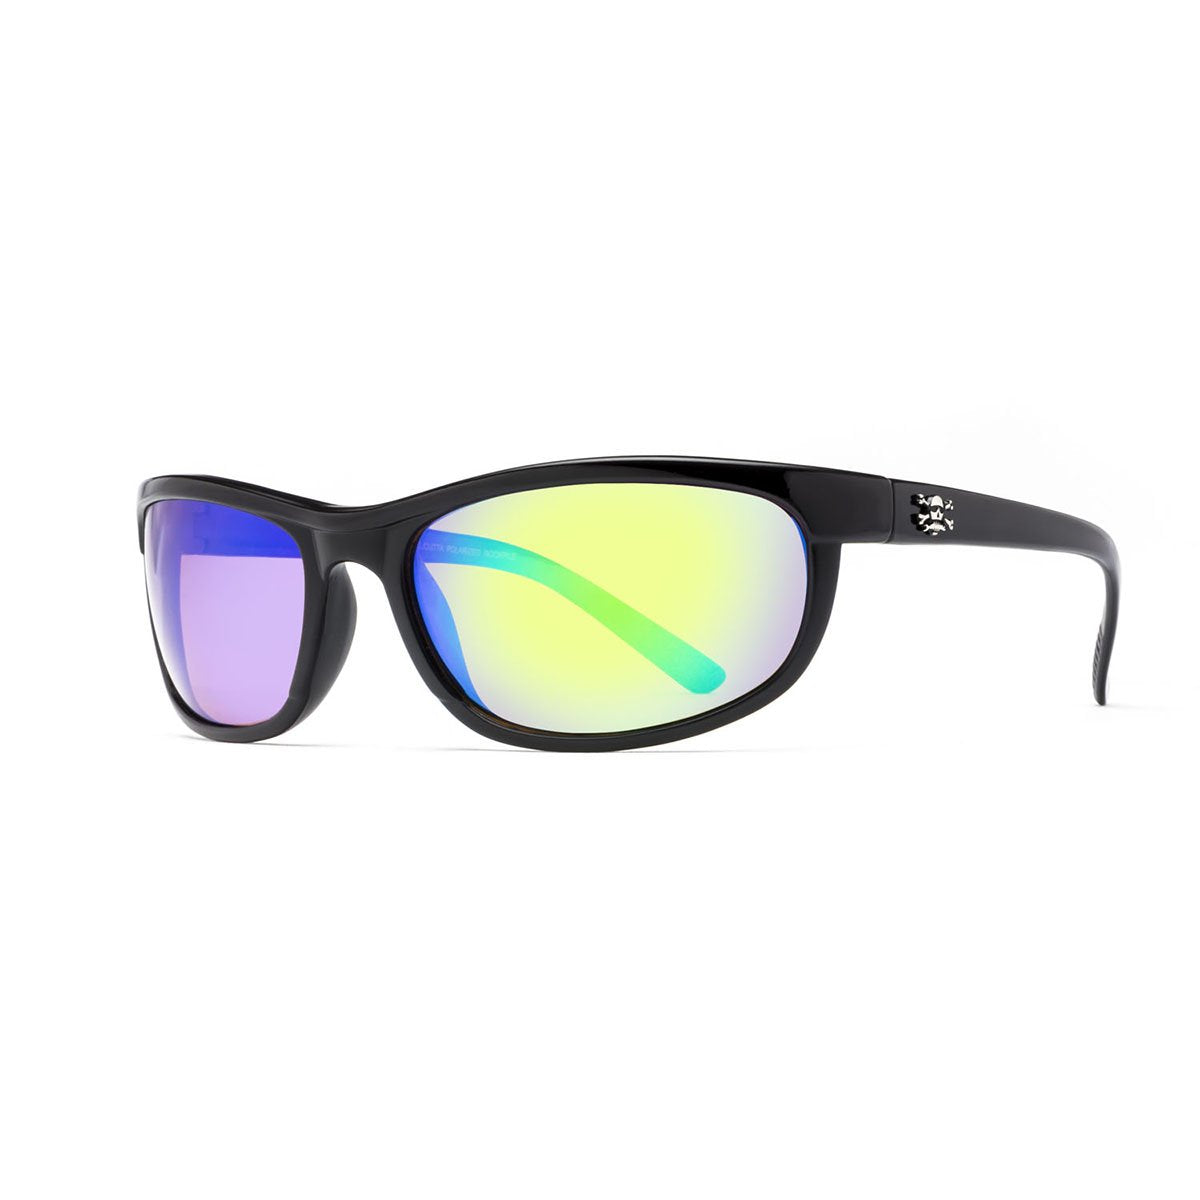 Calcutta Norton Polarized Sunglasses Matte Black Frame/Blue Mirror Lens